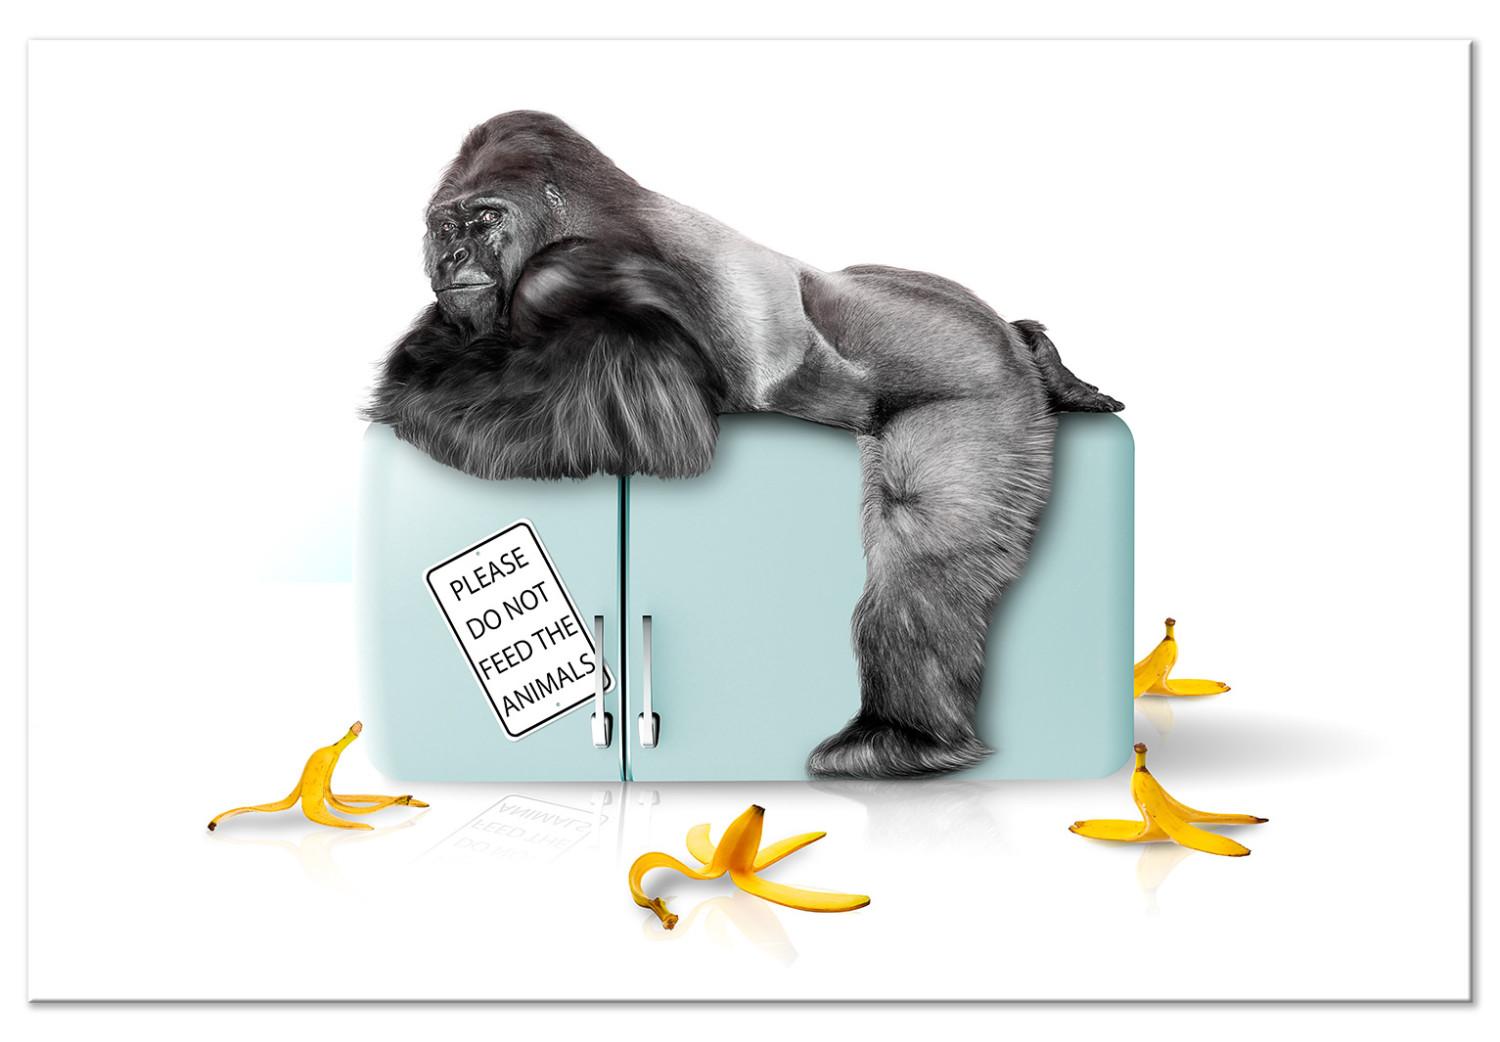 Cuadro Refrigerador confiscado - foto divertida con gorila e inscripciones